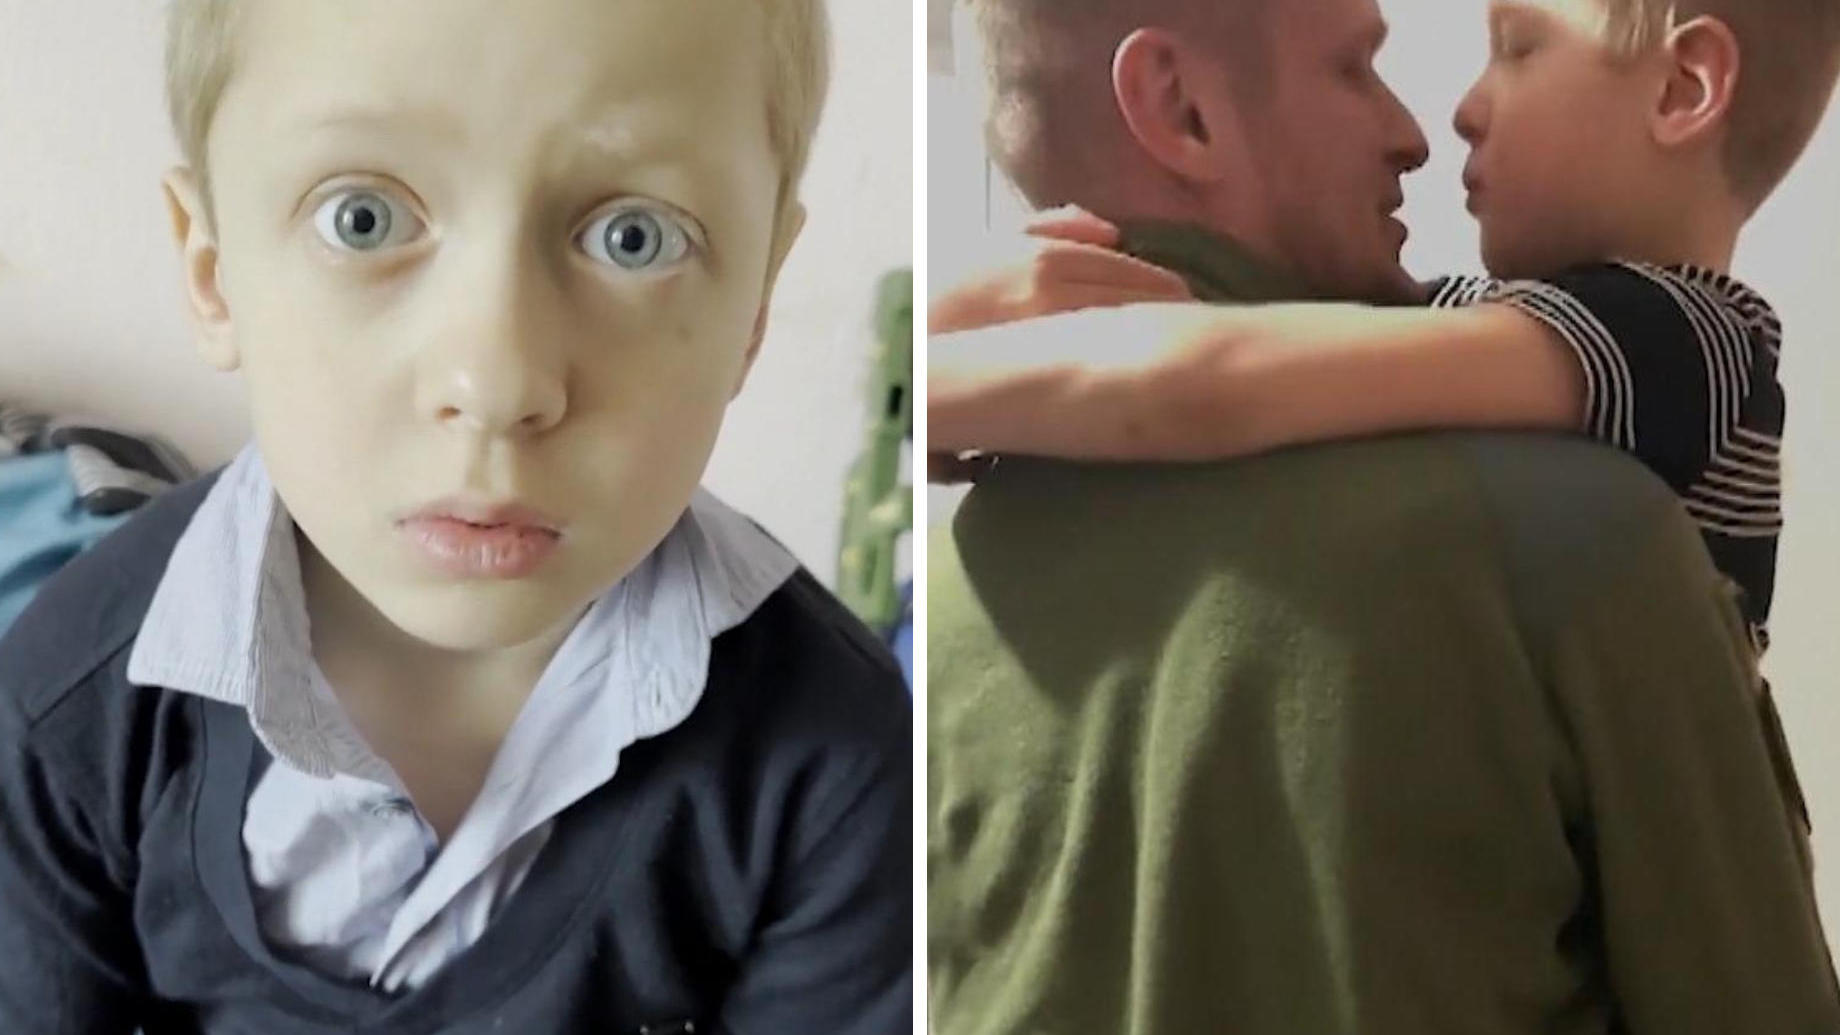 Nach Monaten im Ukraine-Krieg! Junge sieht Vater wieder "Dachte, das war nur ein Traum"